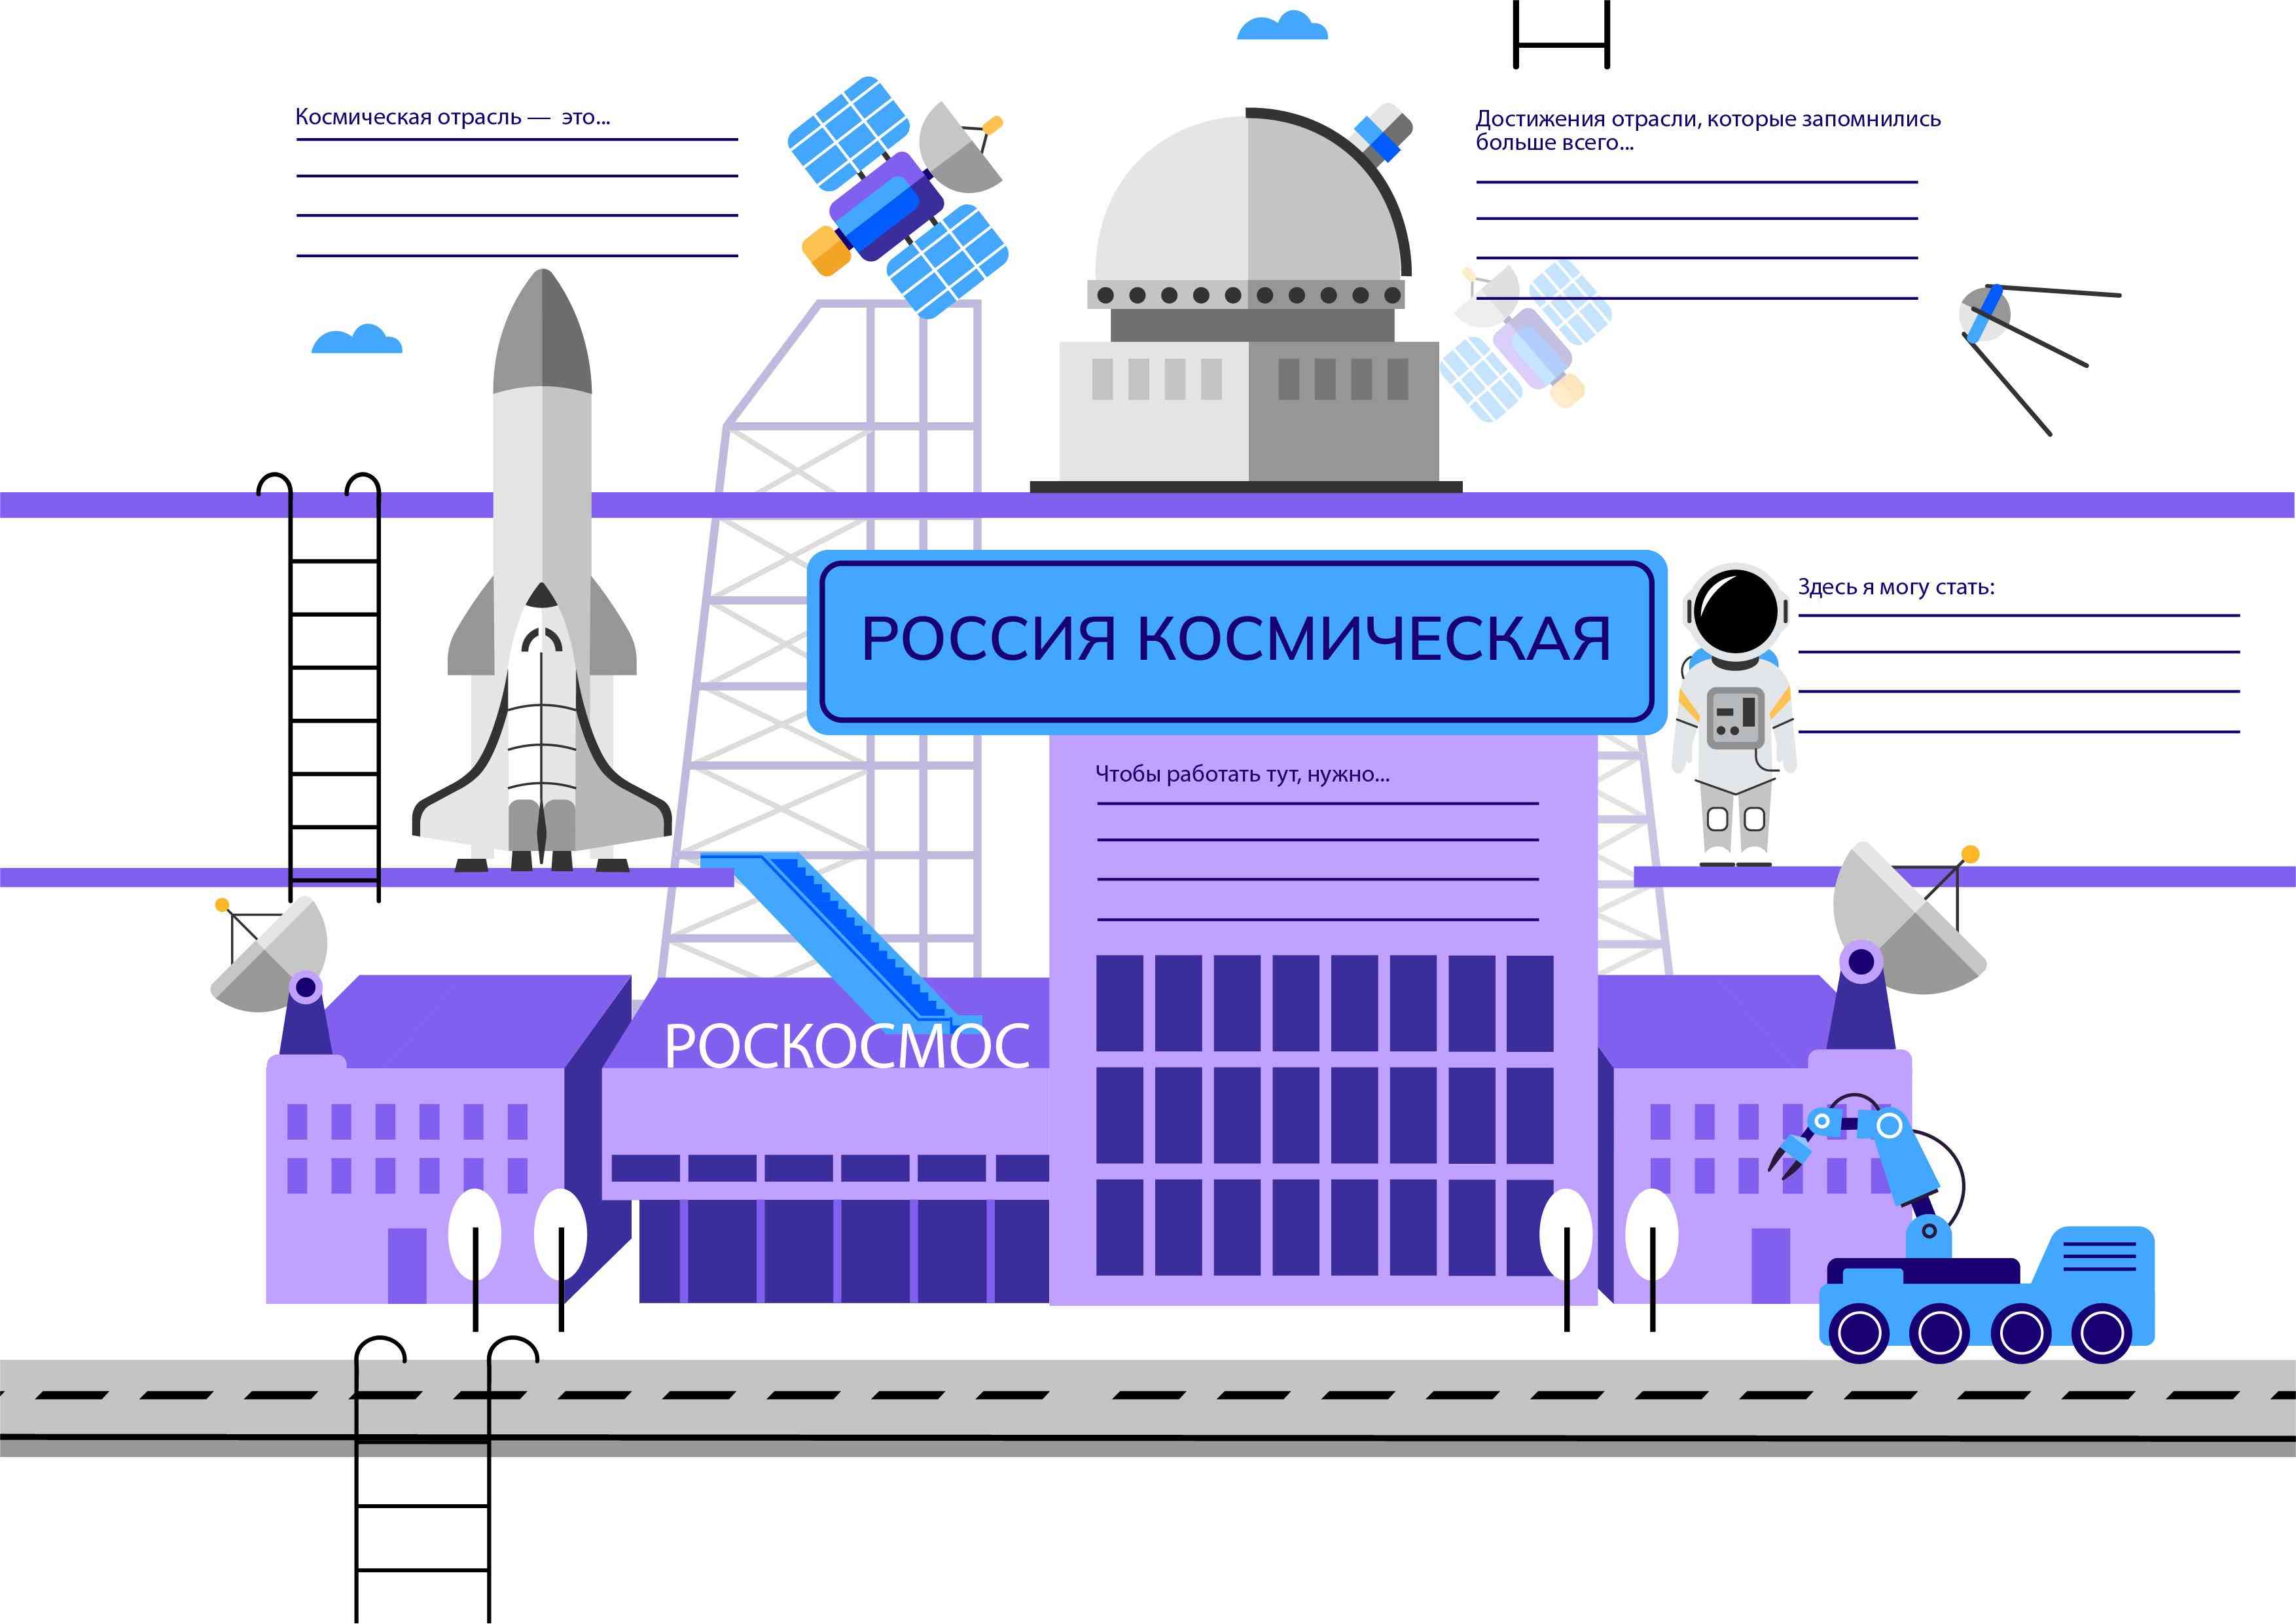 11 апреля - профориентационное занятие «Россия космическая: узнаю о профессиях и достижениях в космической отрасли».